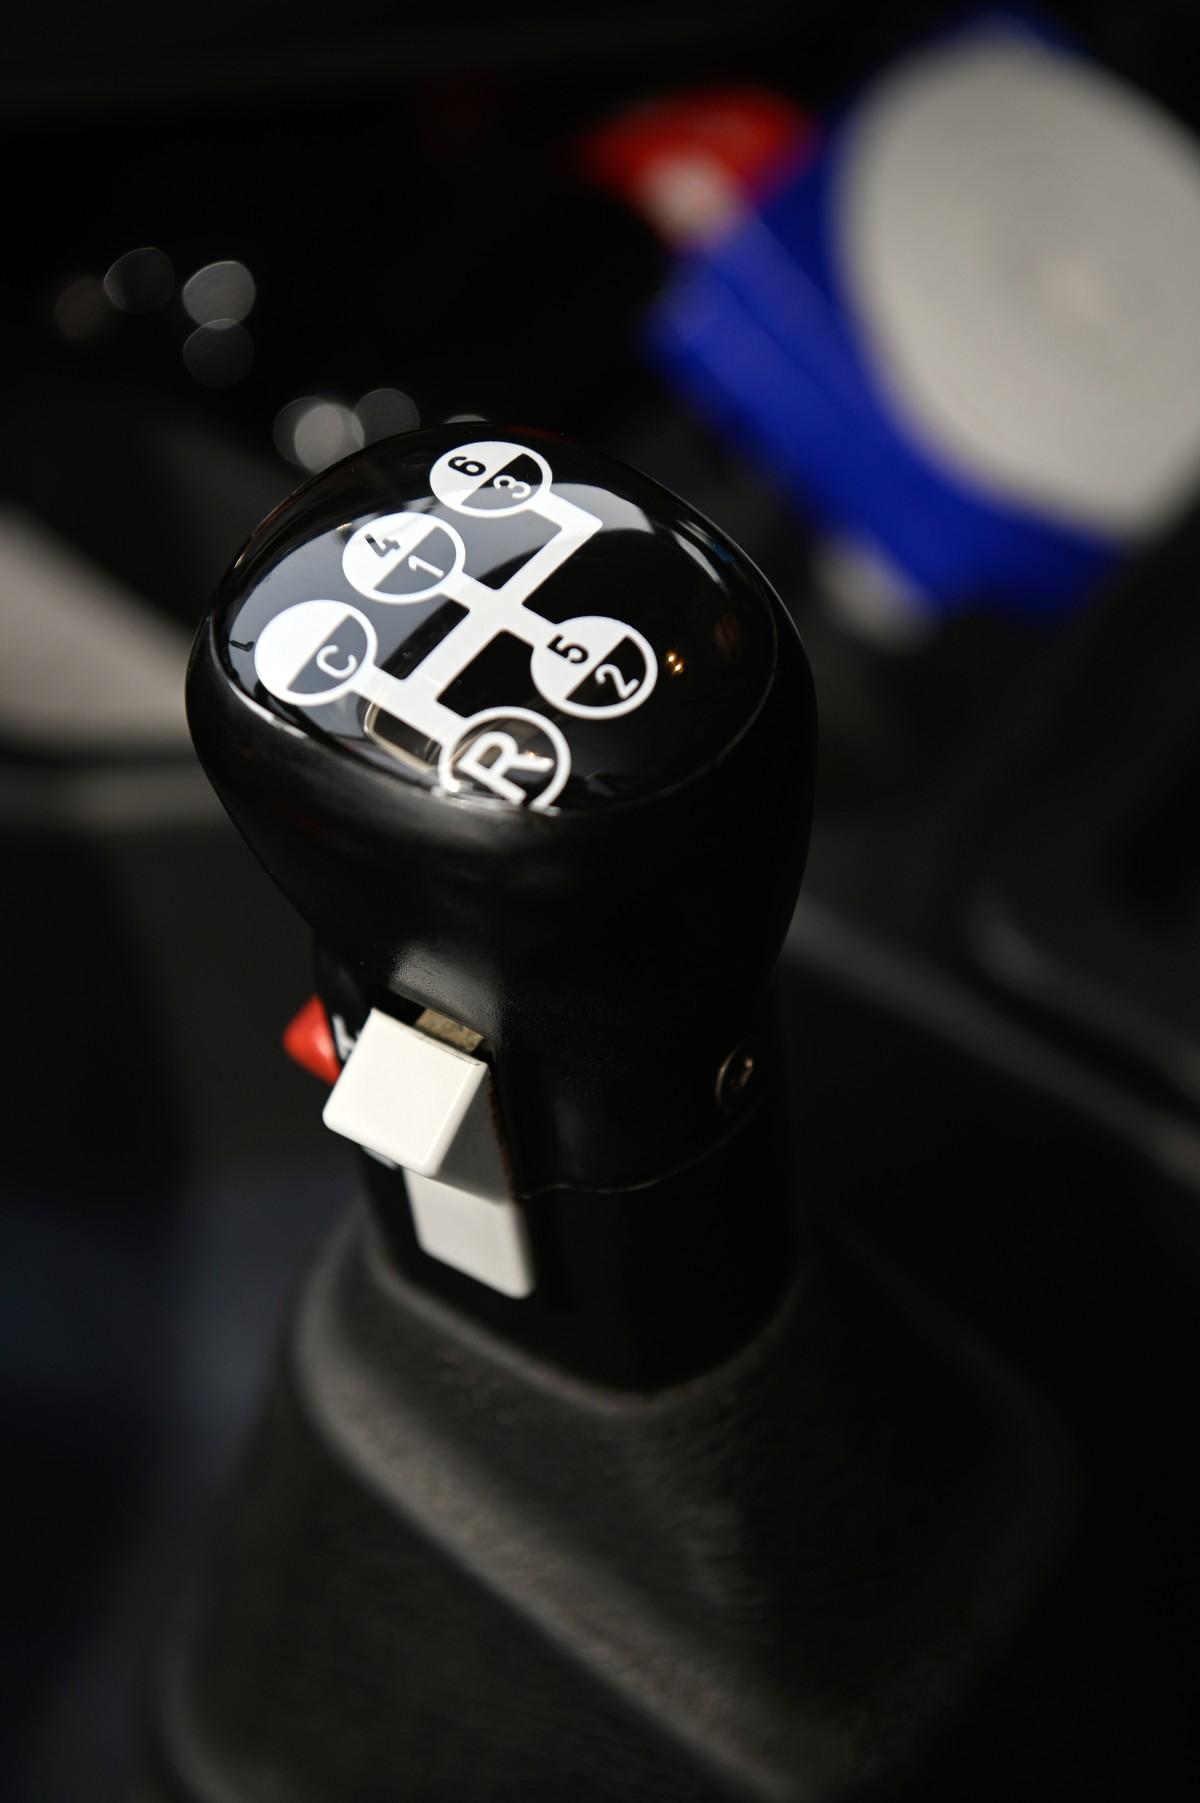 Das Range-/Splitt-Getriebe im Volvo-Oldie verlangt dem Fahrer mehr Handarbeit ab. | Foto: Quatex